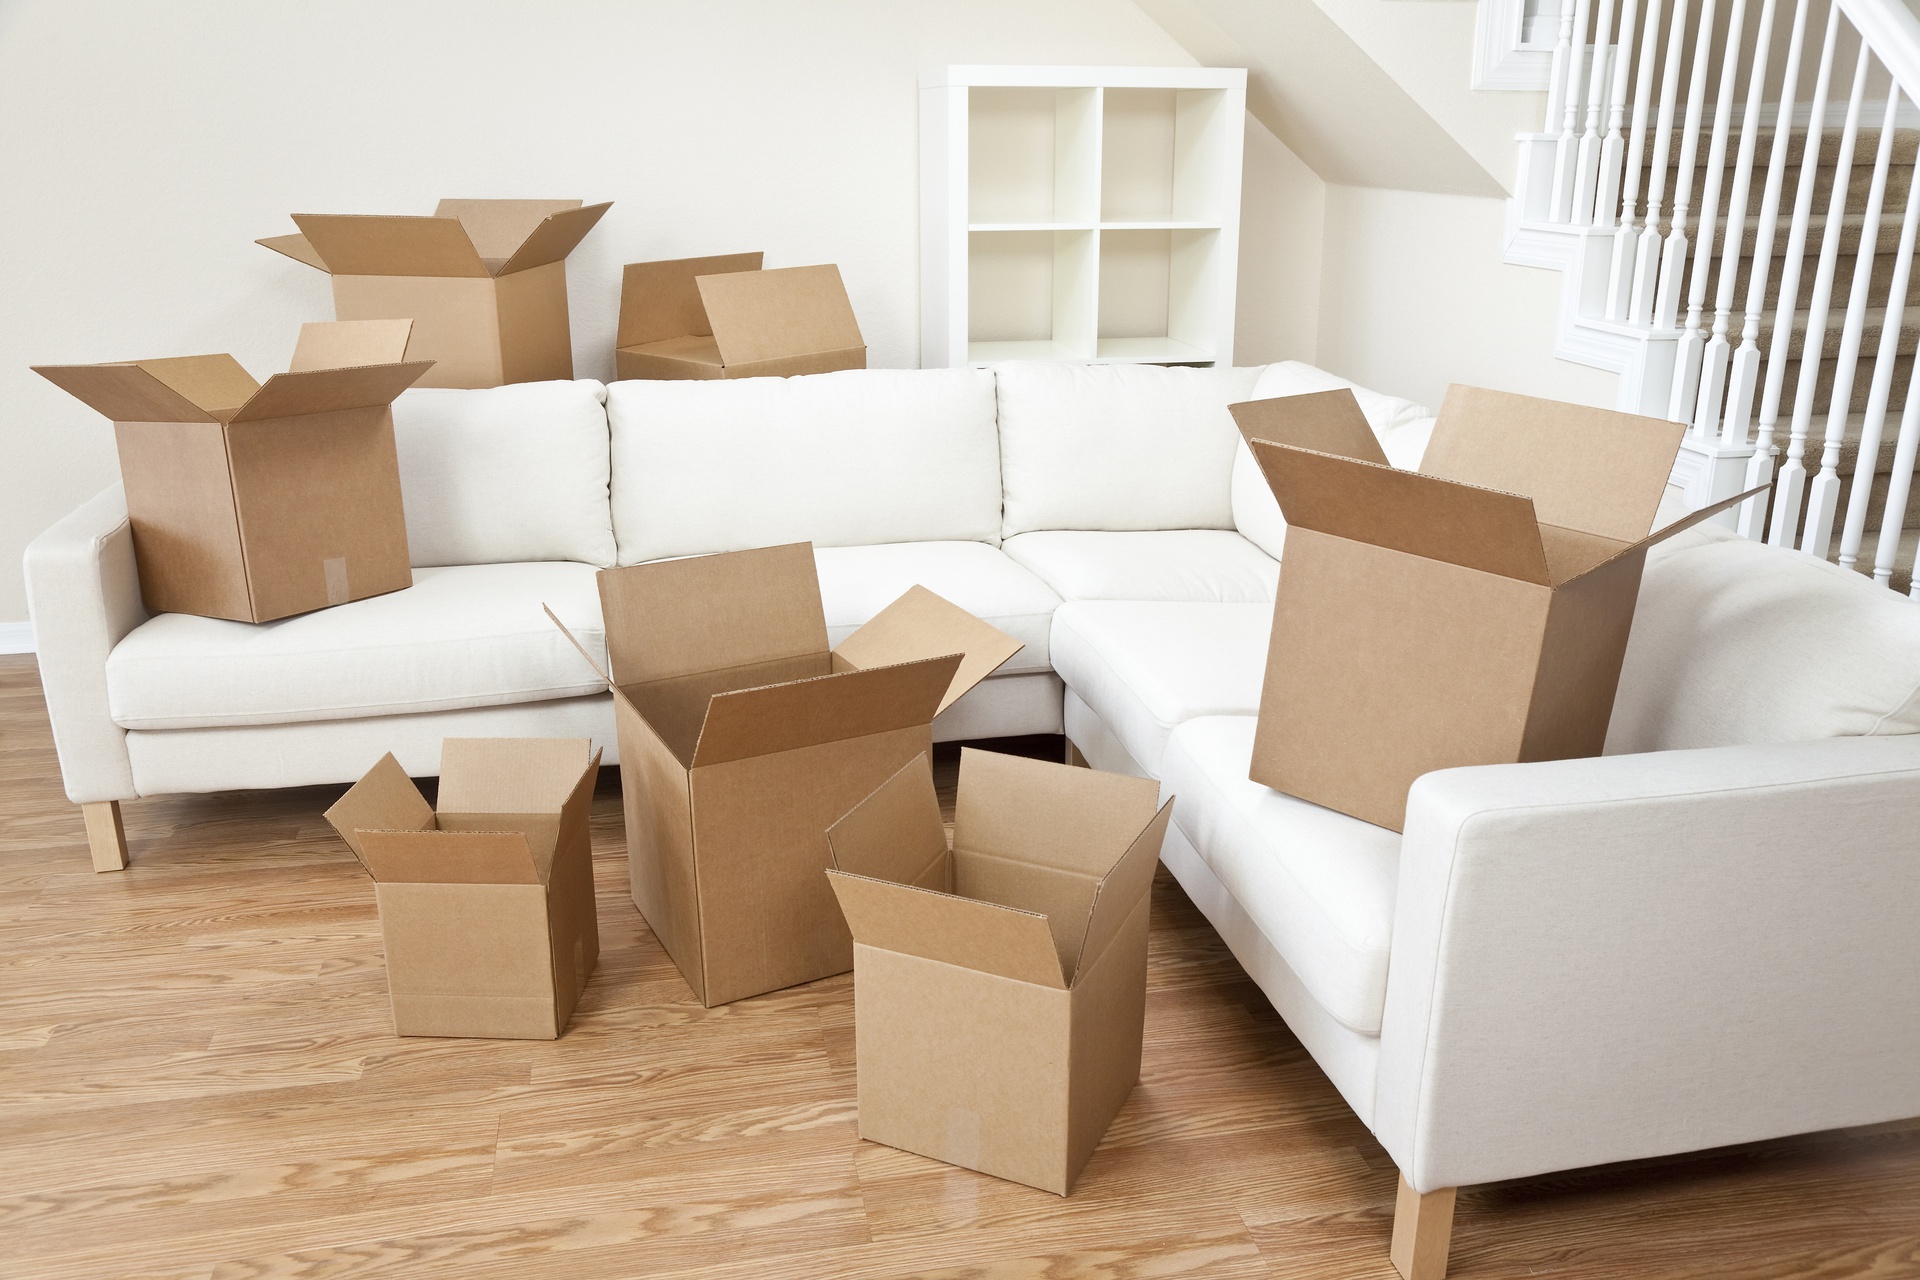 Nên mua thùng carton chuyển nhà, chuyển văn phòng như thế nào?